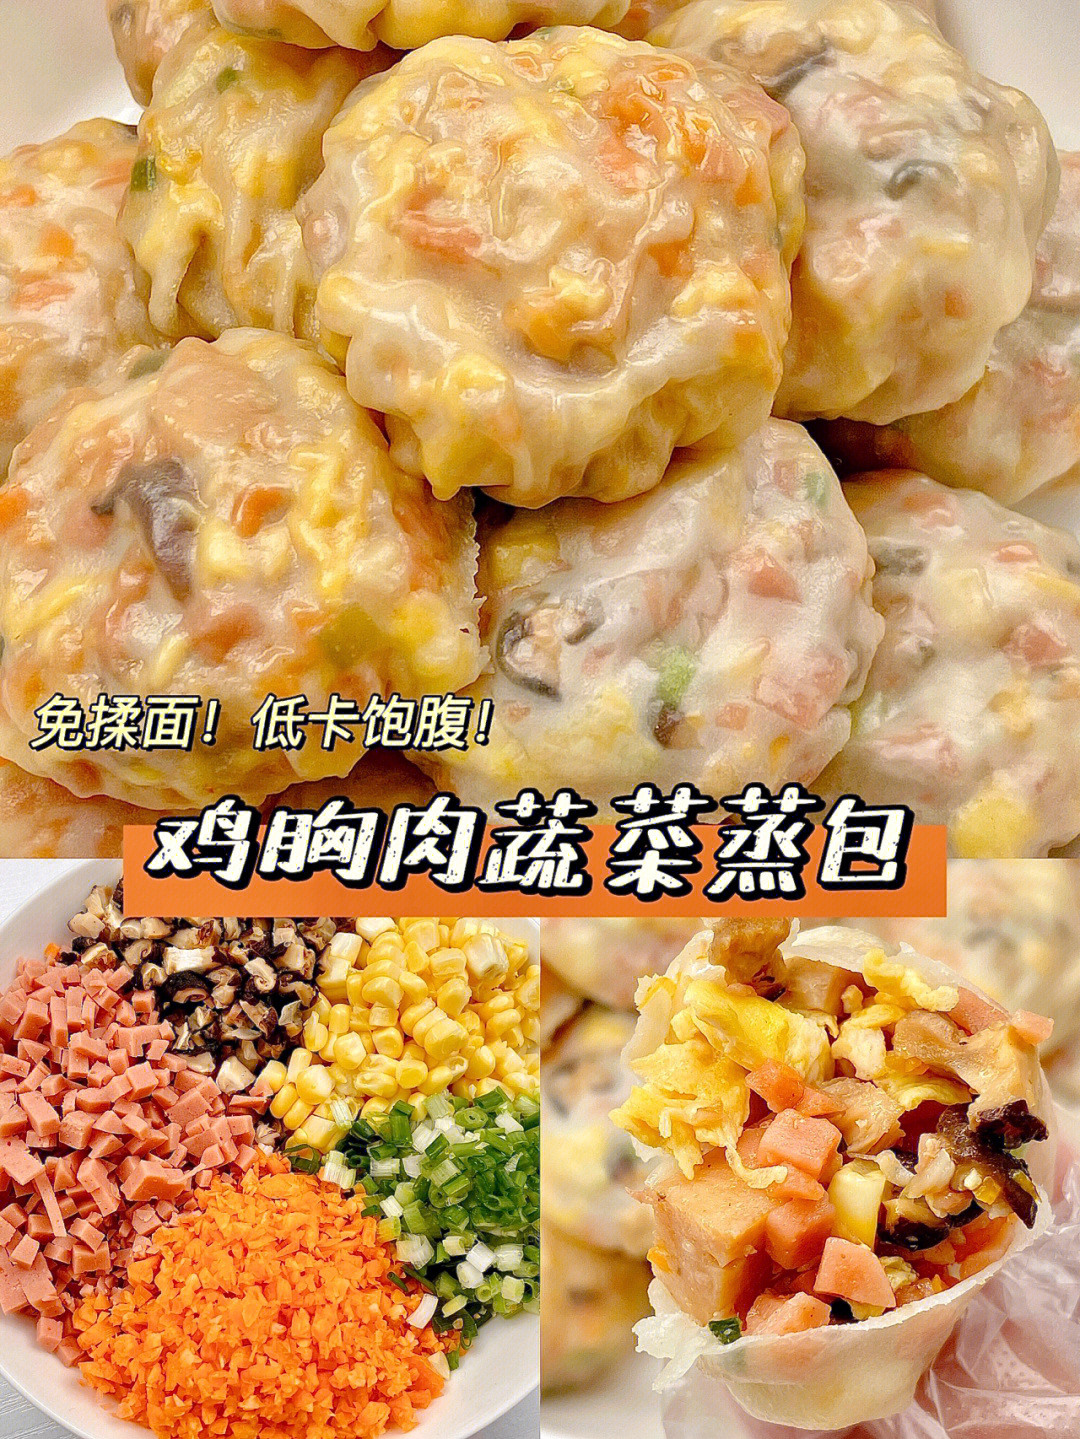 96准备食材:即食鸡胸肉,饺子皮,鸡蛋,葱,玉米粒,香菇,火腿肠,胡